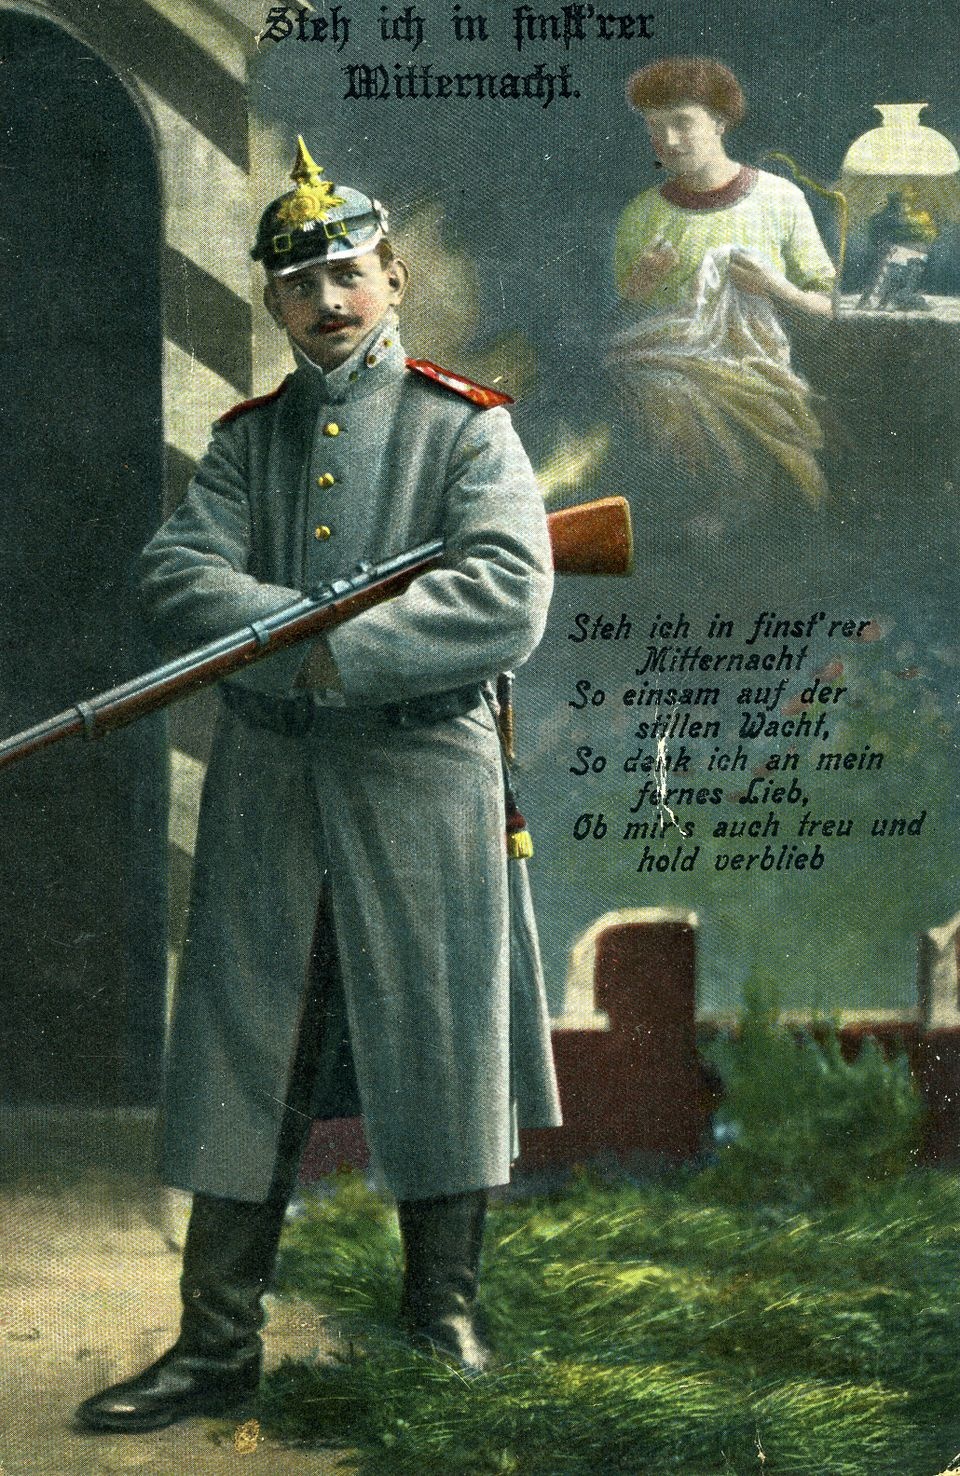 Bildpostkarte Finst&rsquo;re Mitternacht (Historisches Museum der Pfalz, Speyer CC BY)